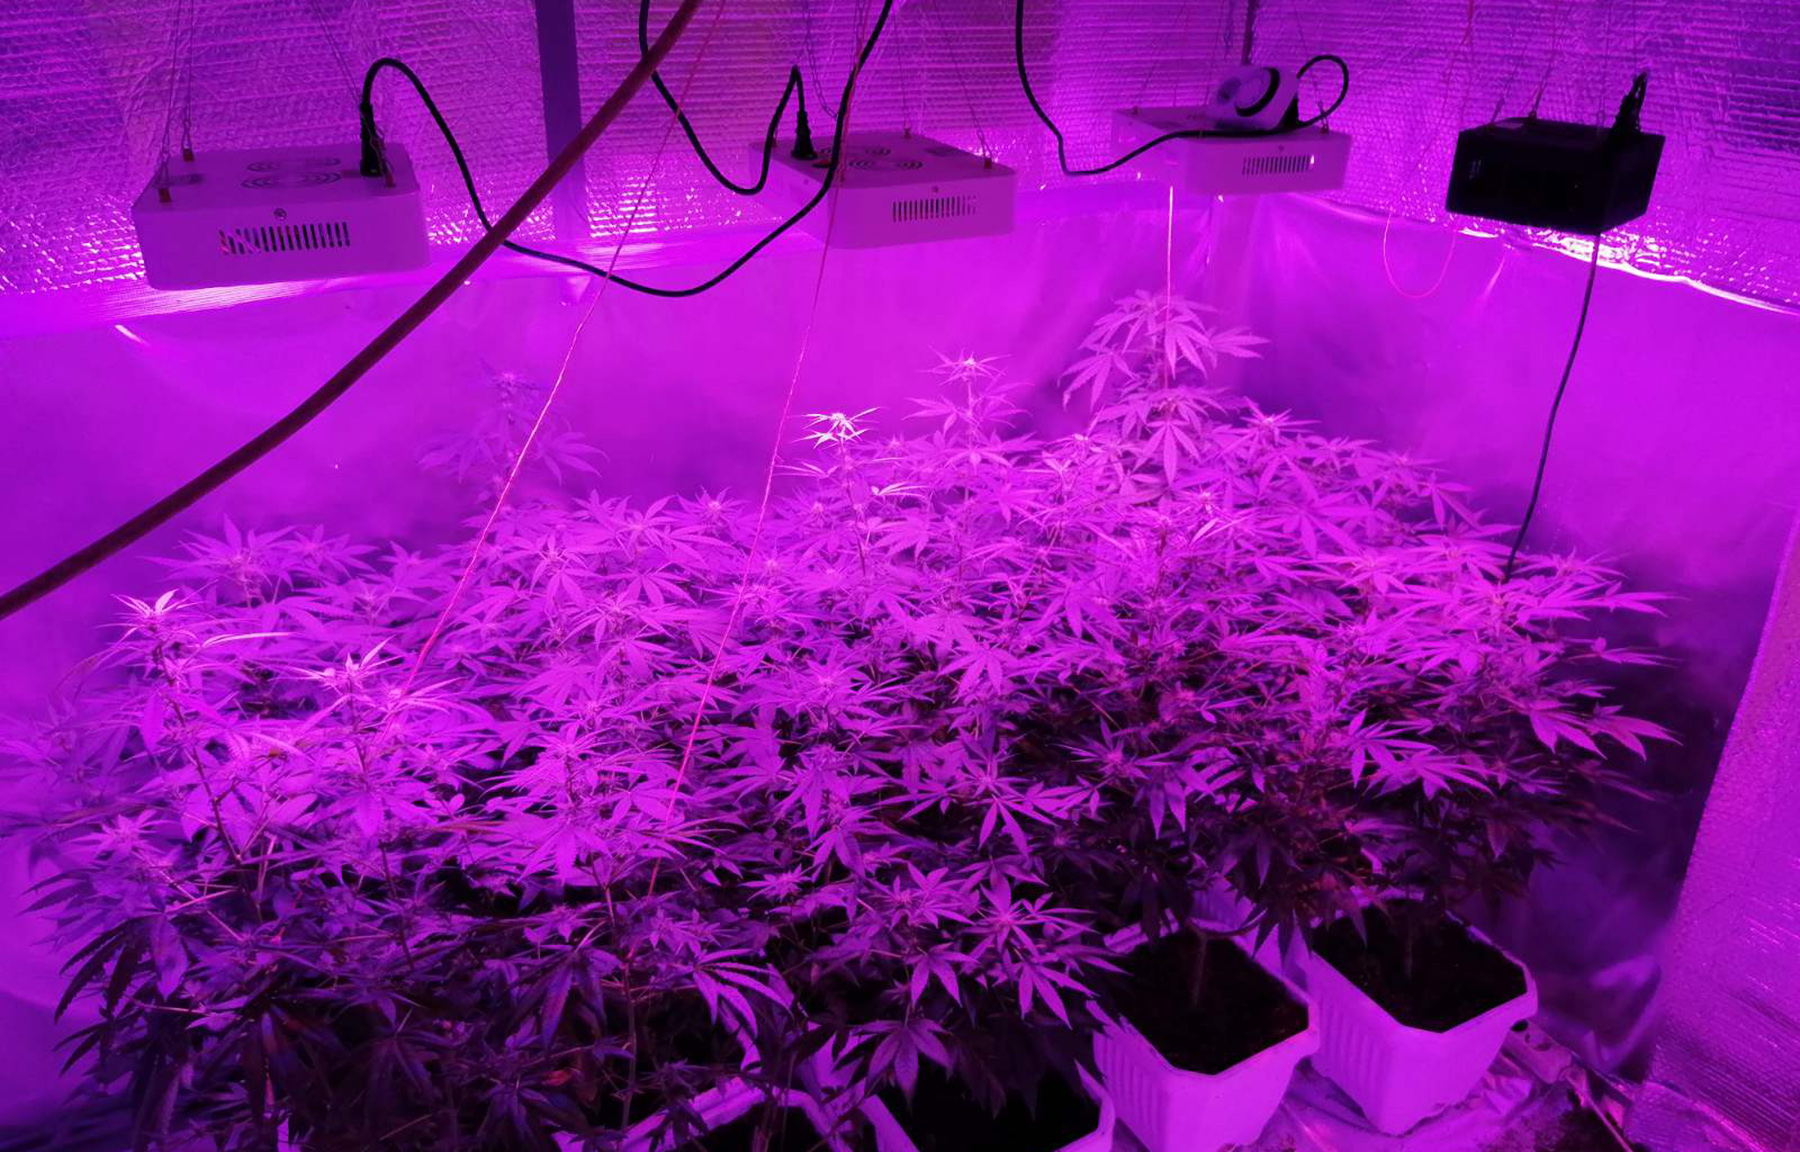 Otkrivena laboratorija za uzgoj marihuane, uhapšen osumnjičeni